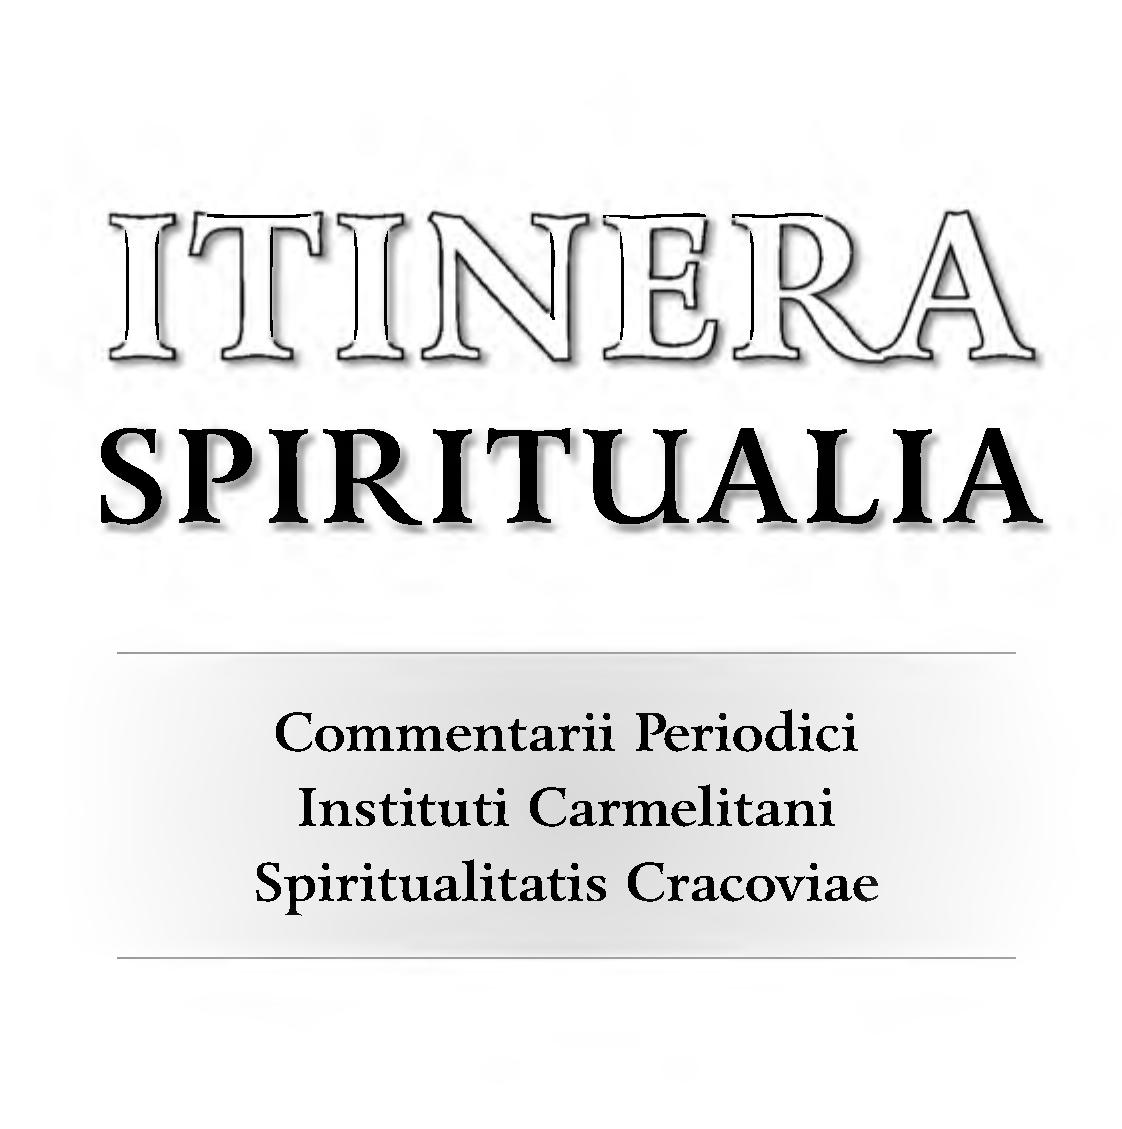 Itinera Spiritualia. Commentarii Periodici Instituti Carmelitani Spiritualitatis Cracoviae